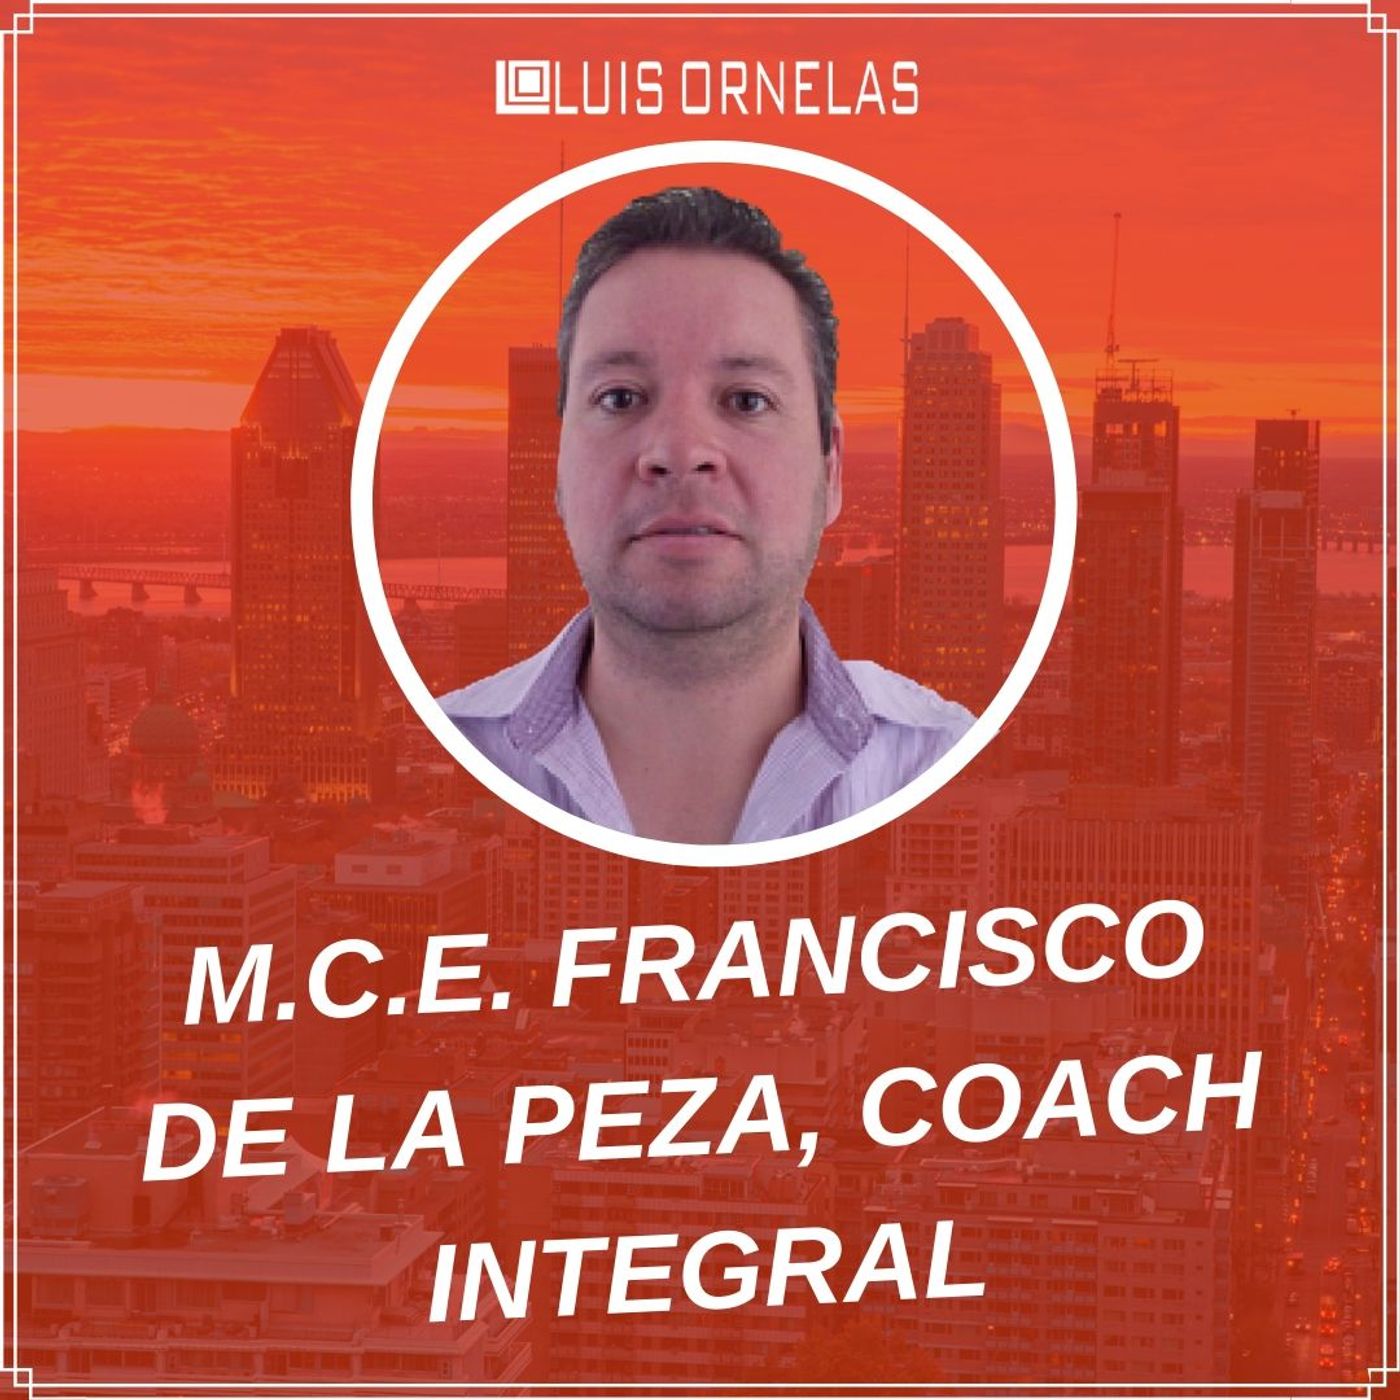 Hoy hablamos con Francisco De La Peza Coach Integral